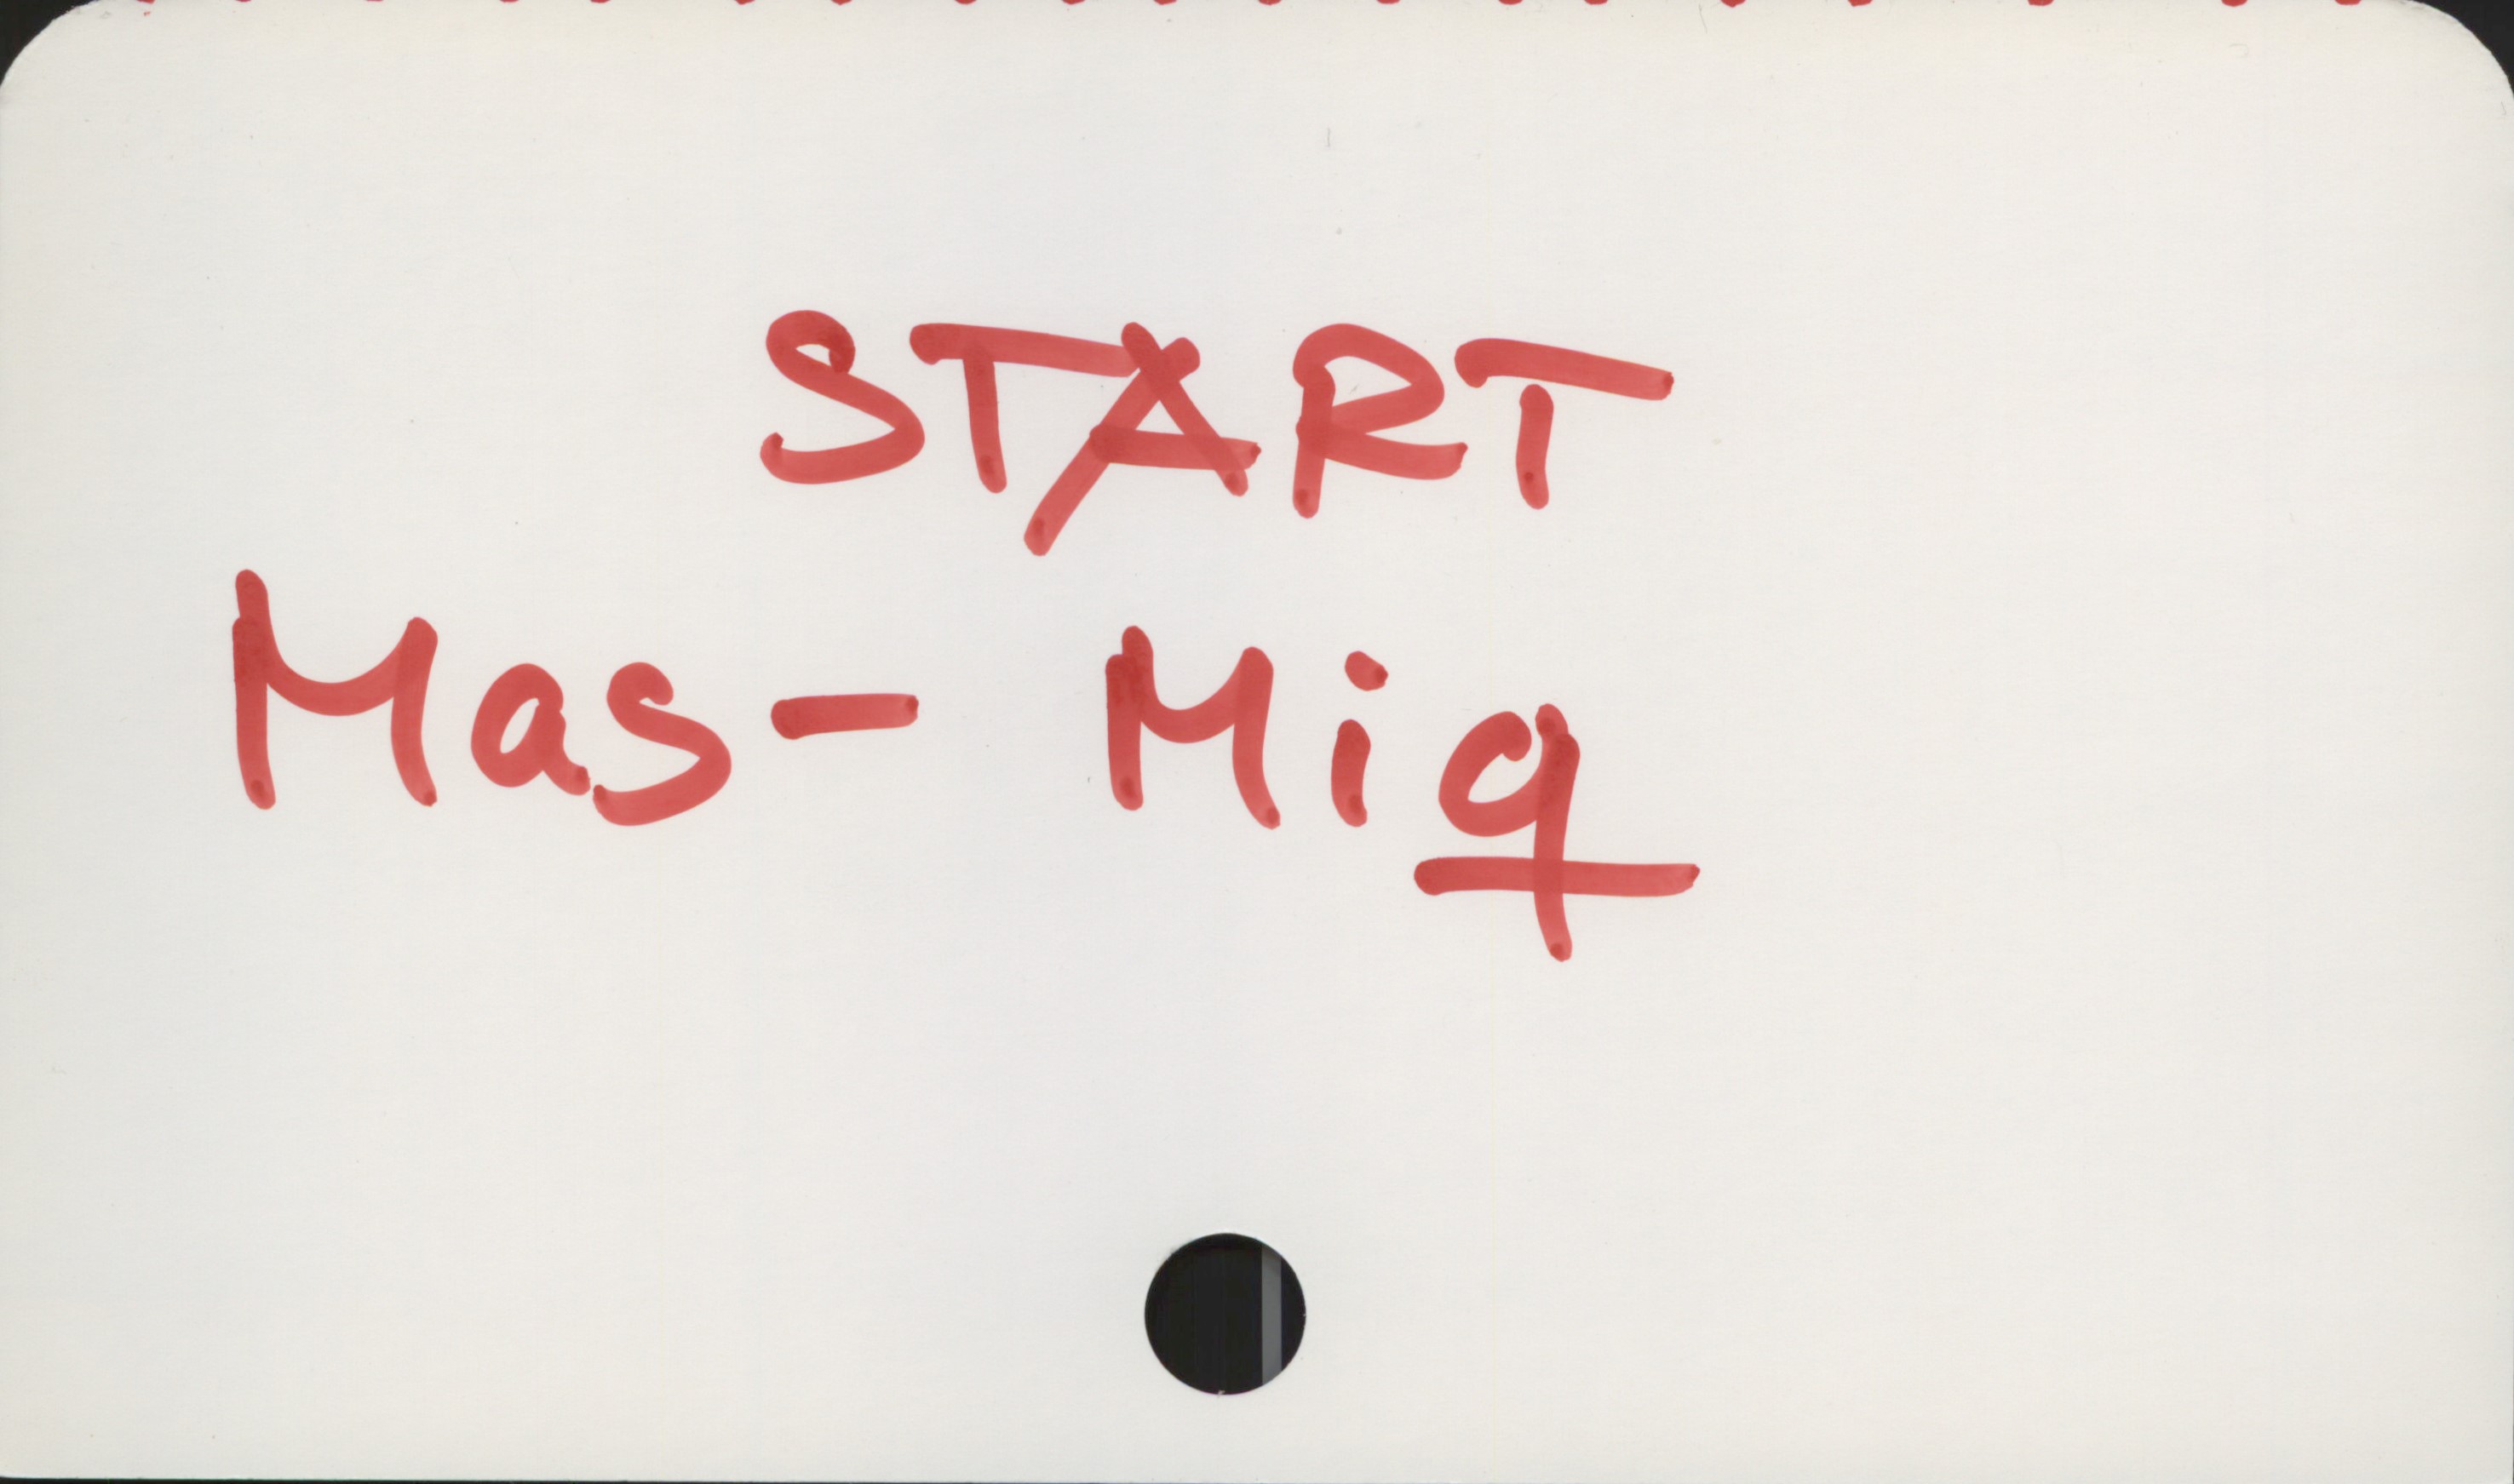  START
Has— Hiq-
___. +

